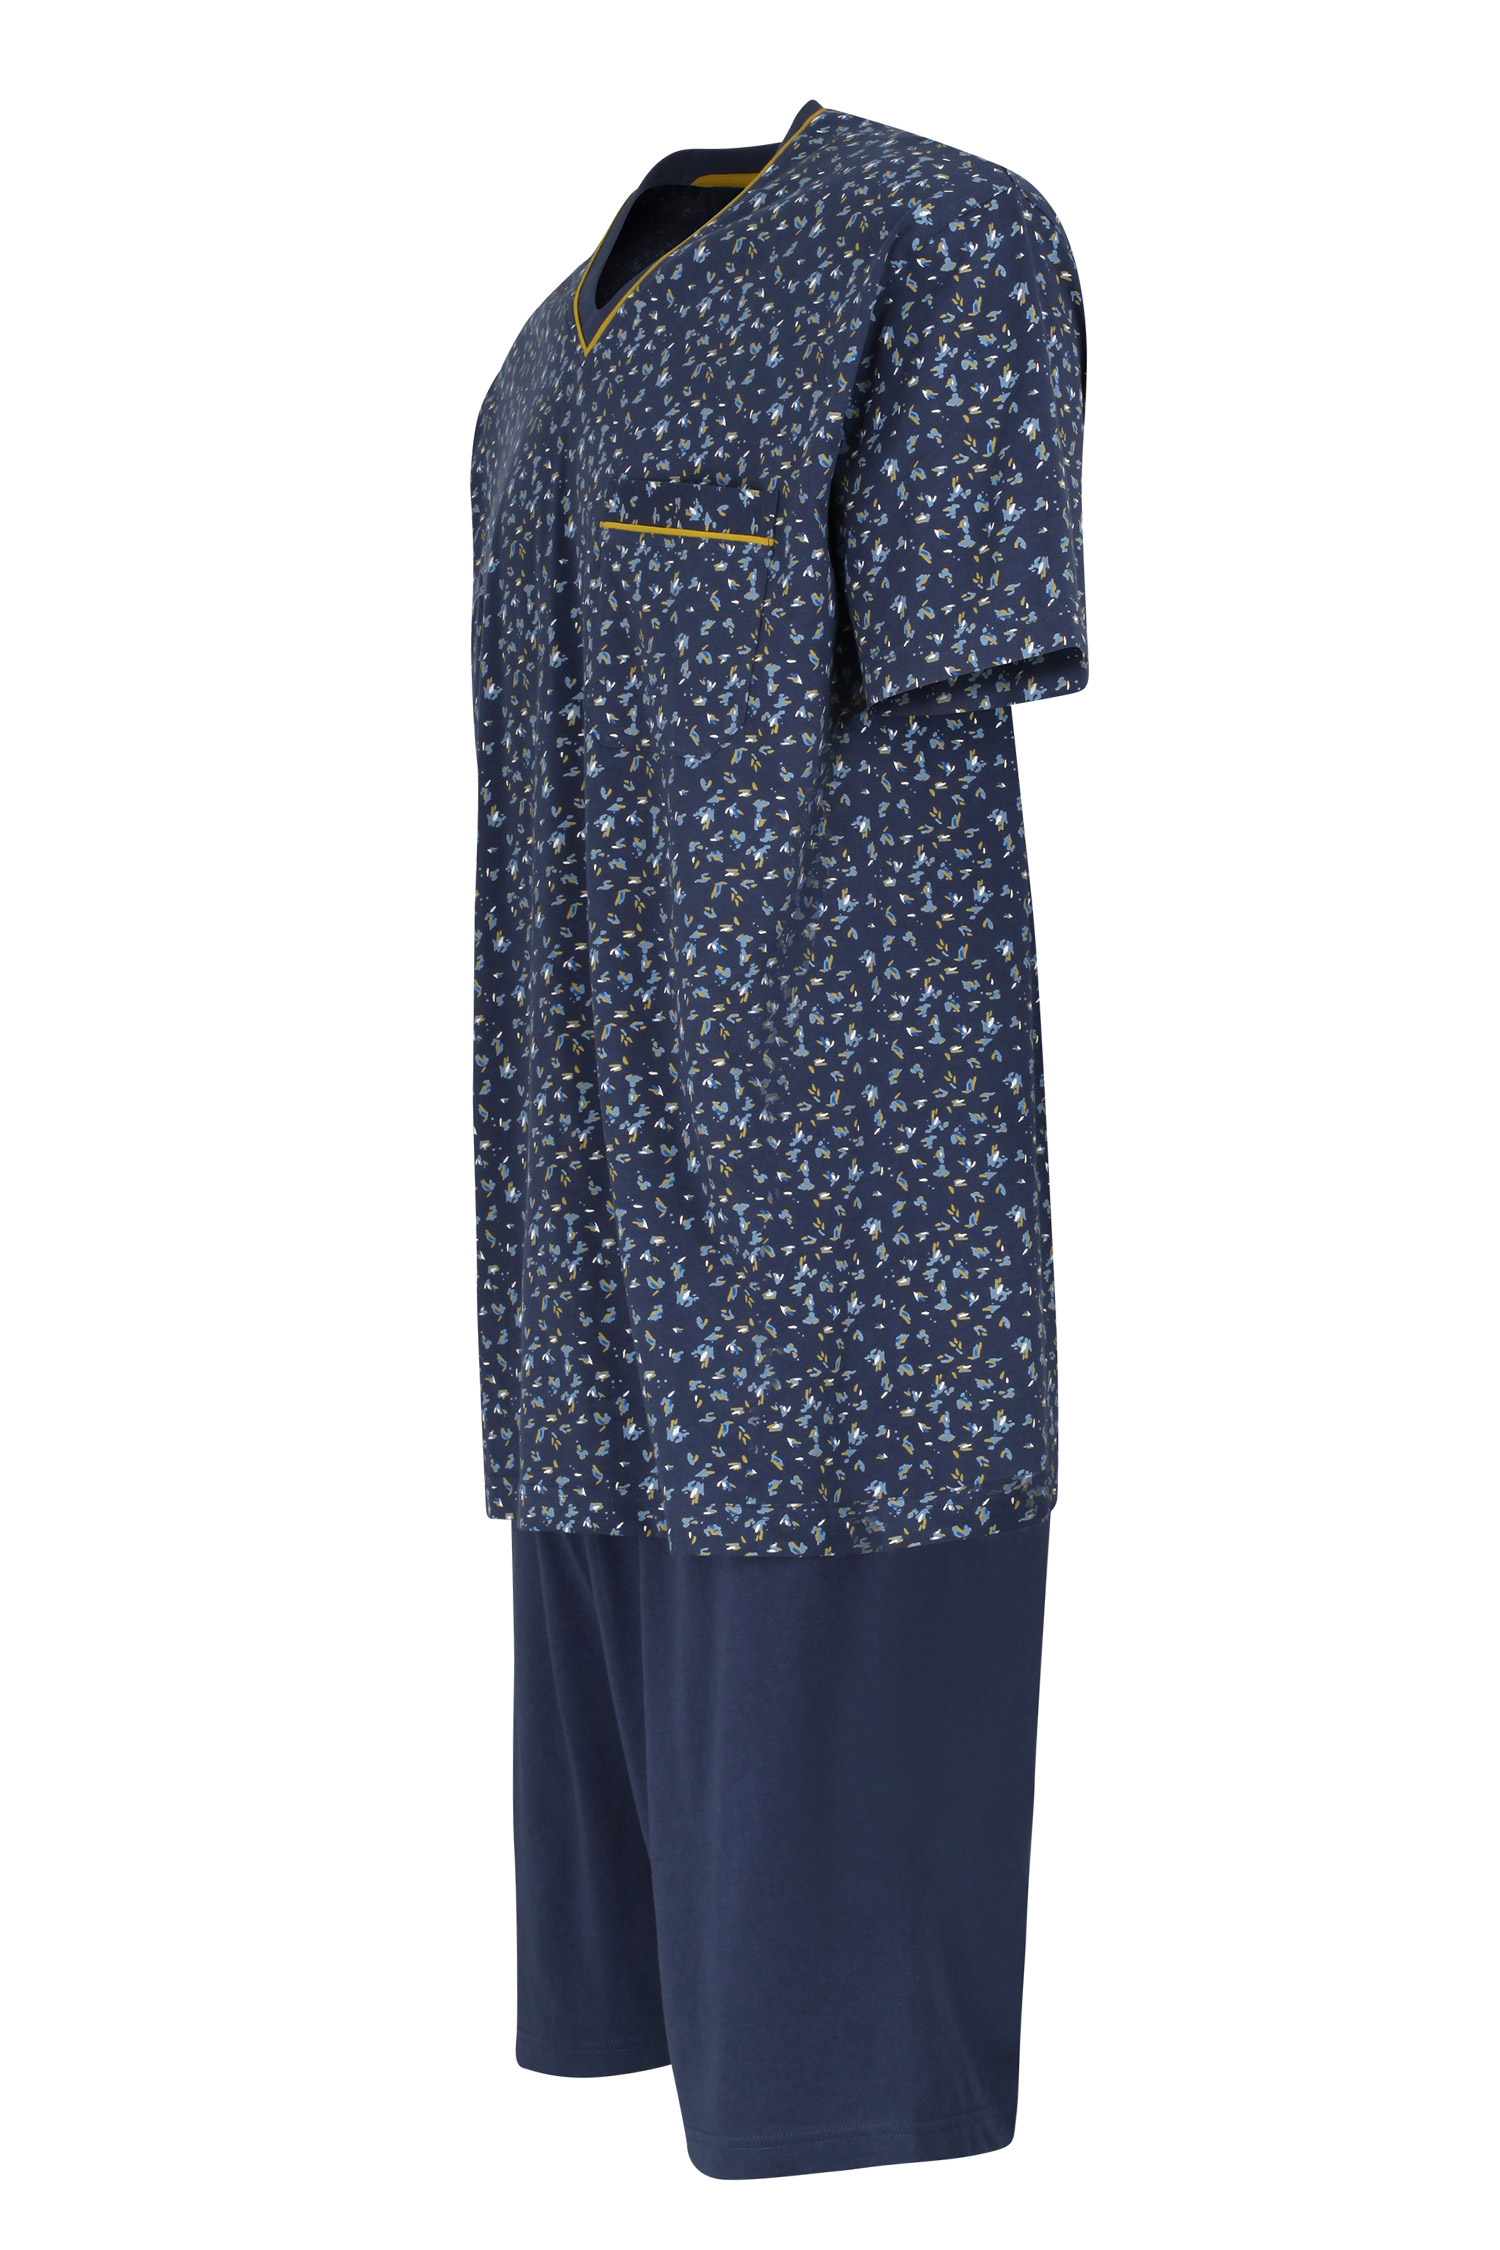 Homewear, Pijama M. Corta, 110854, NOCHE | Zoom